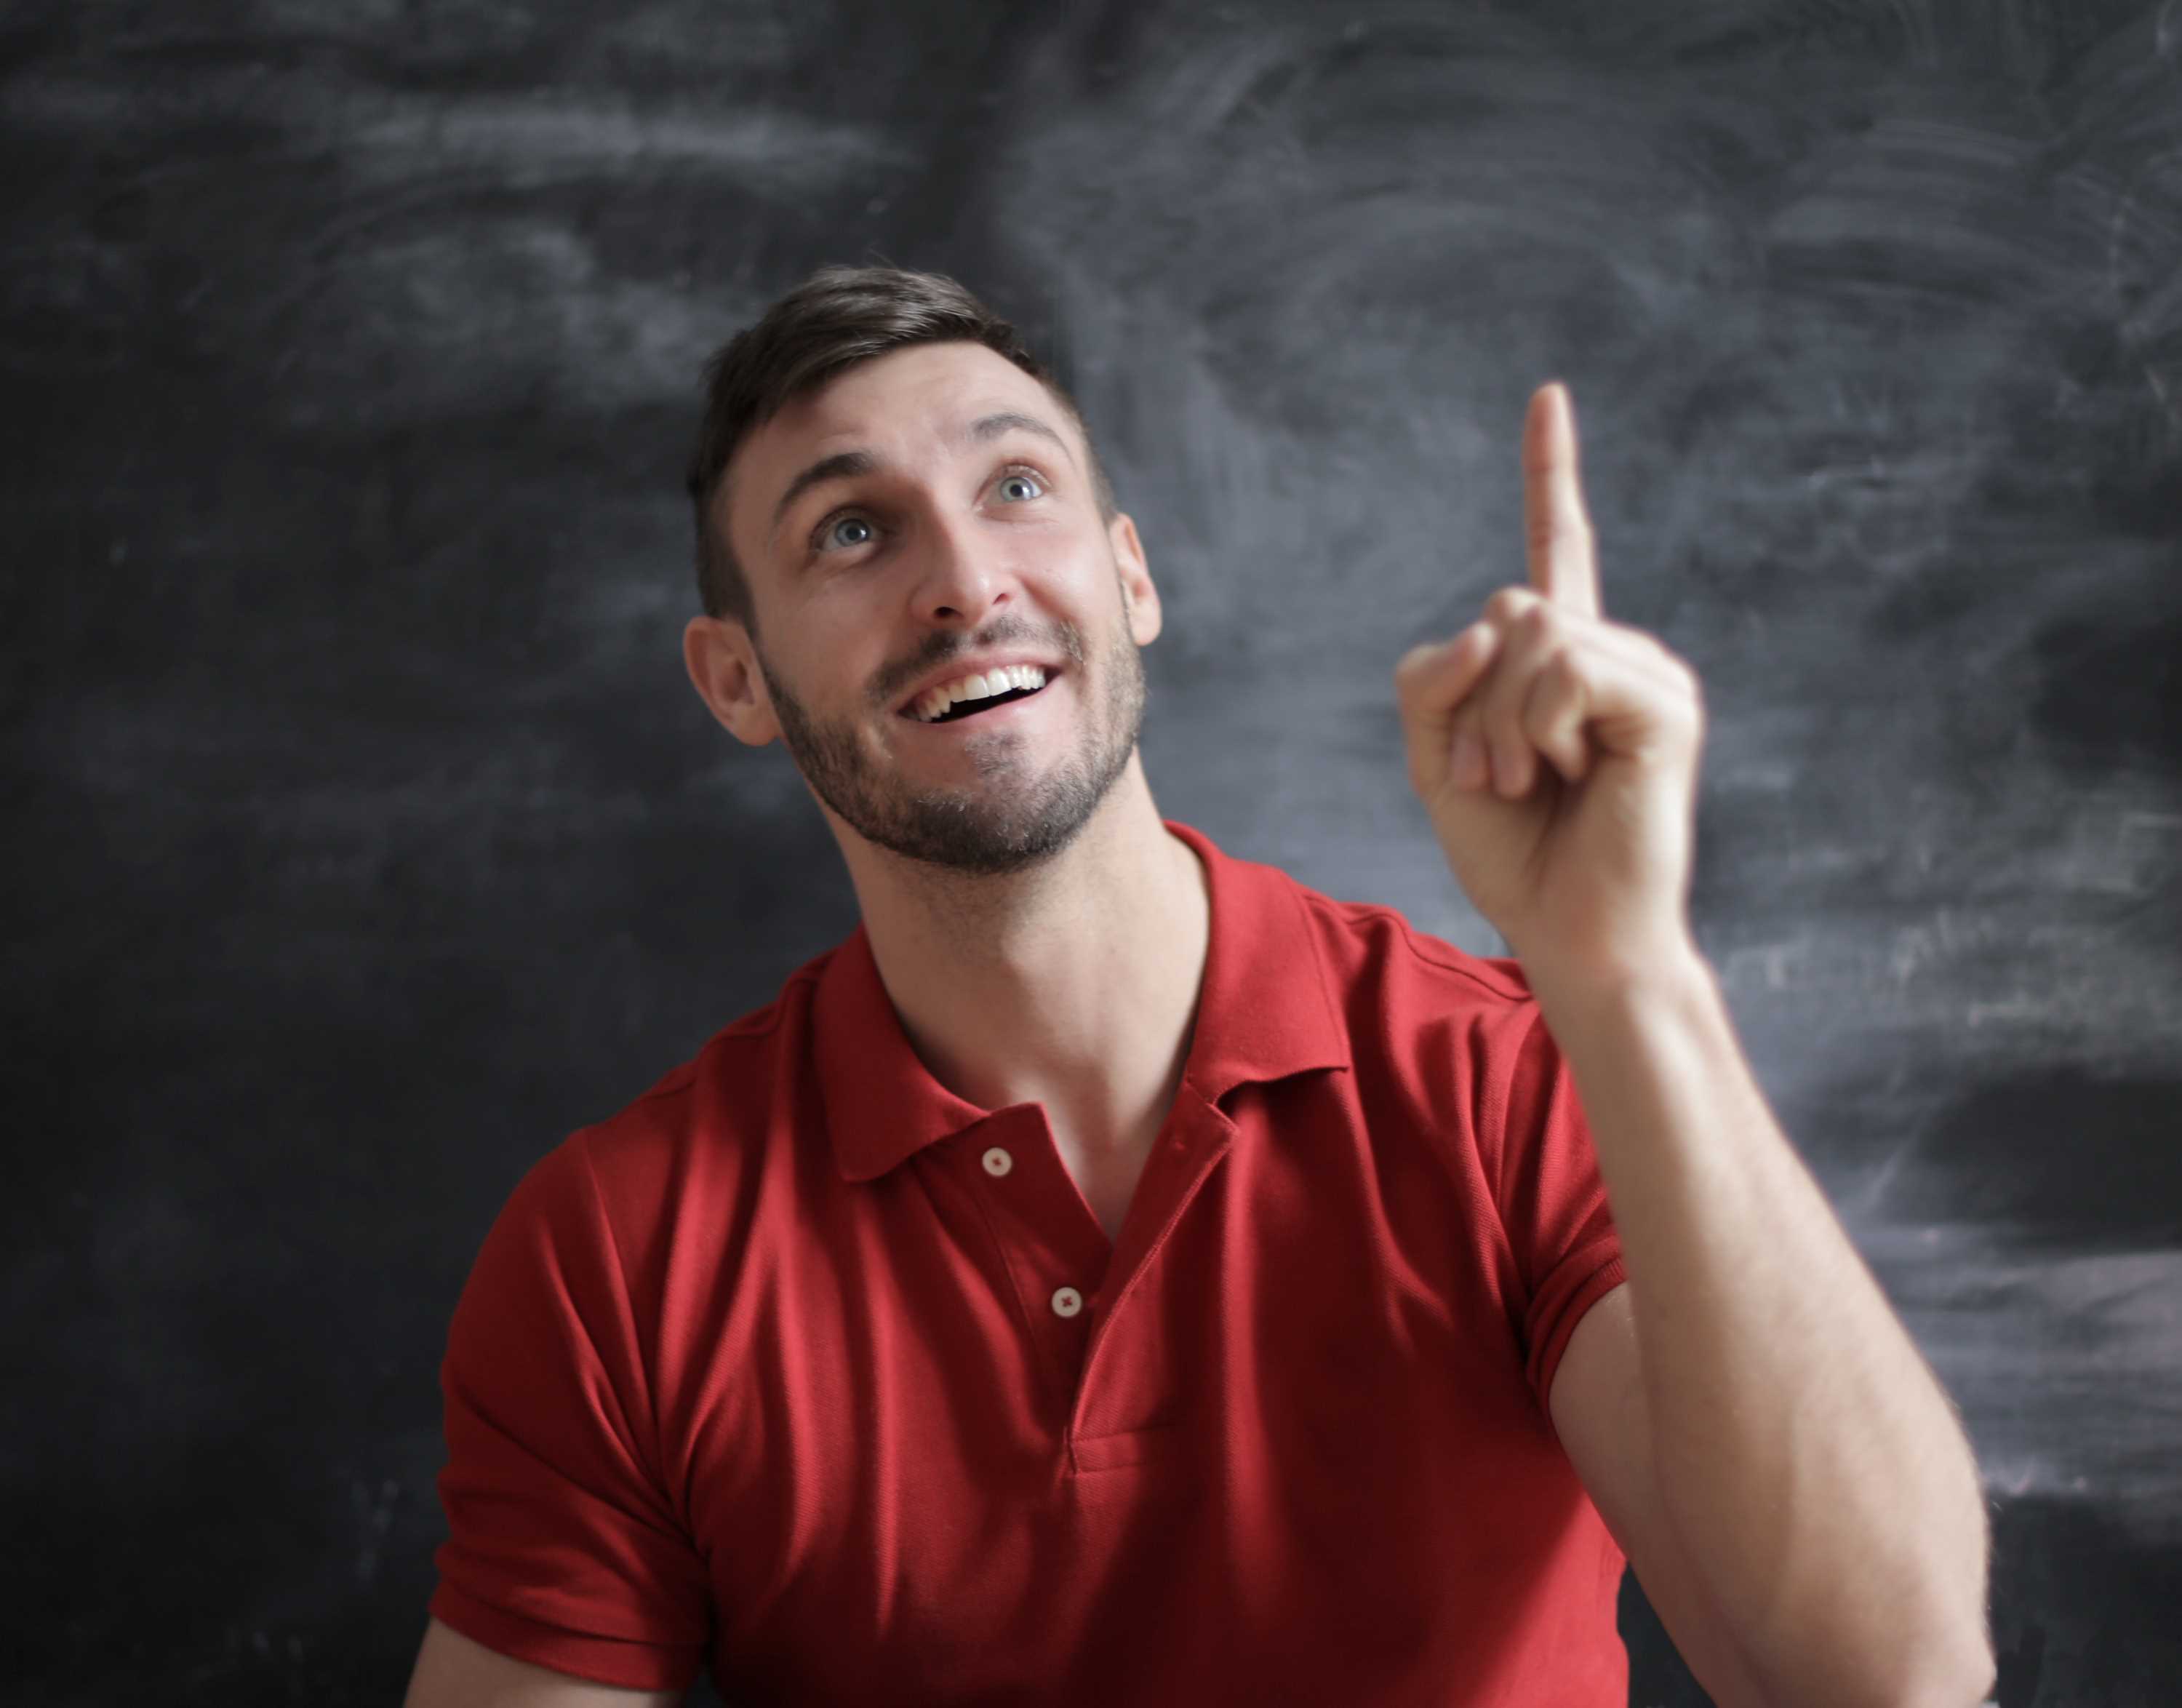 La imagen muestra una persona sonriendo mientras sube un dedo en un intento de hablar.